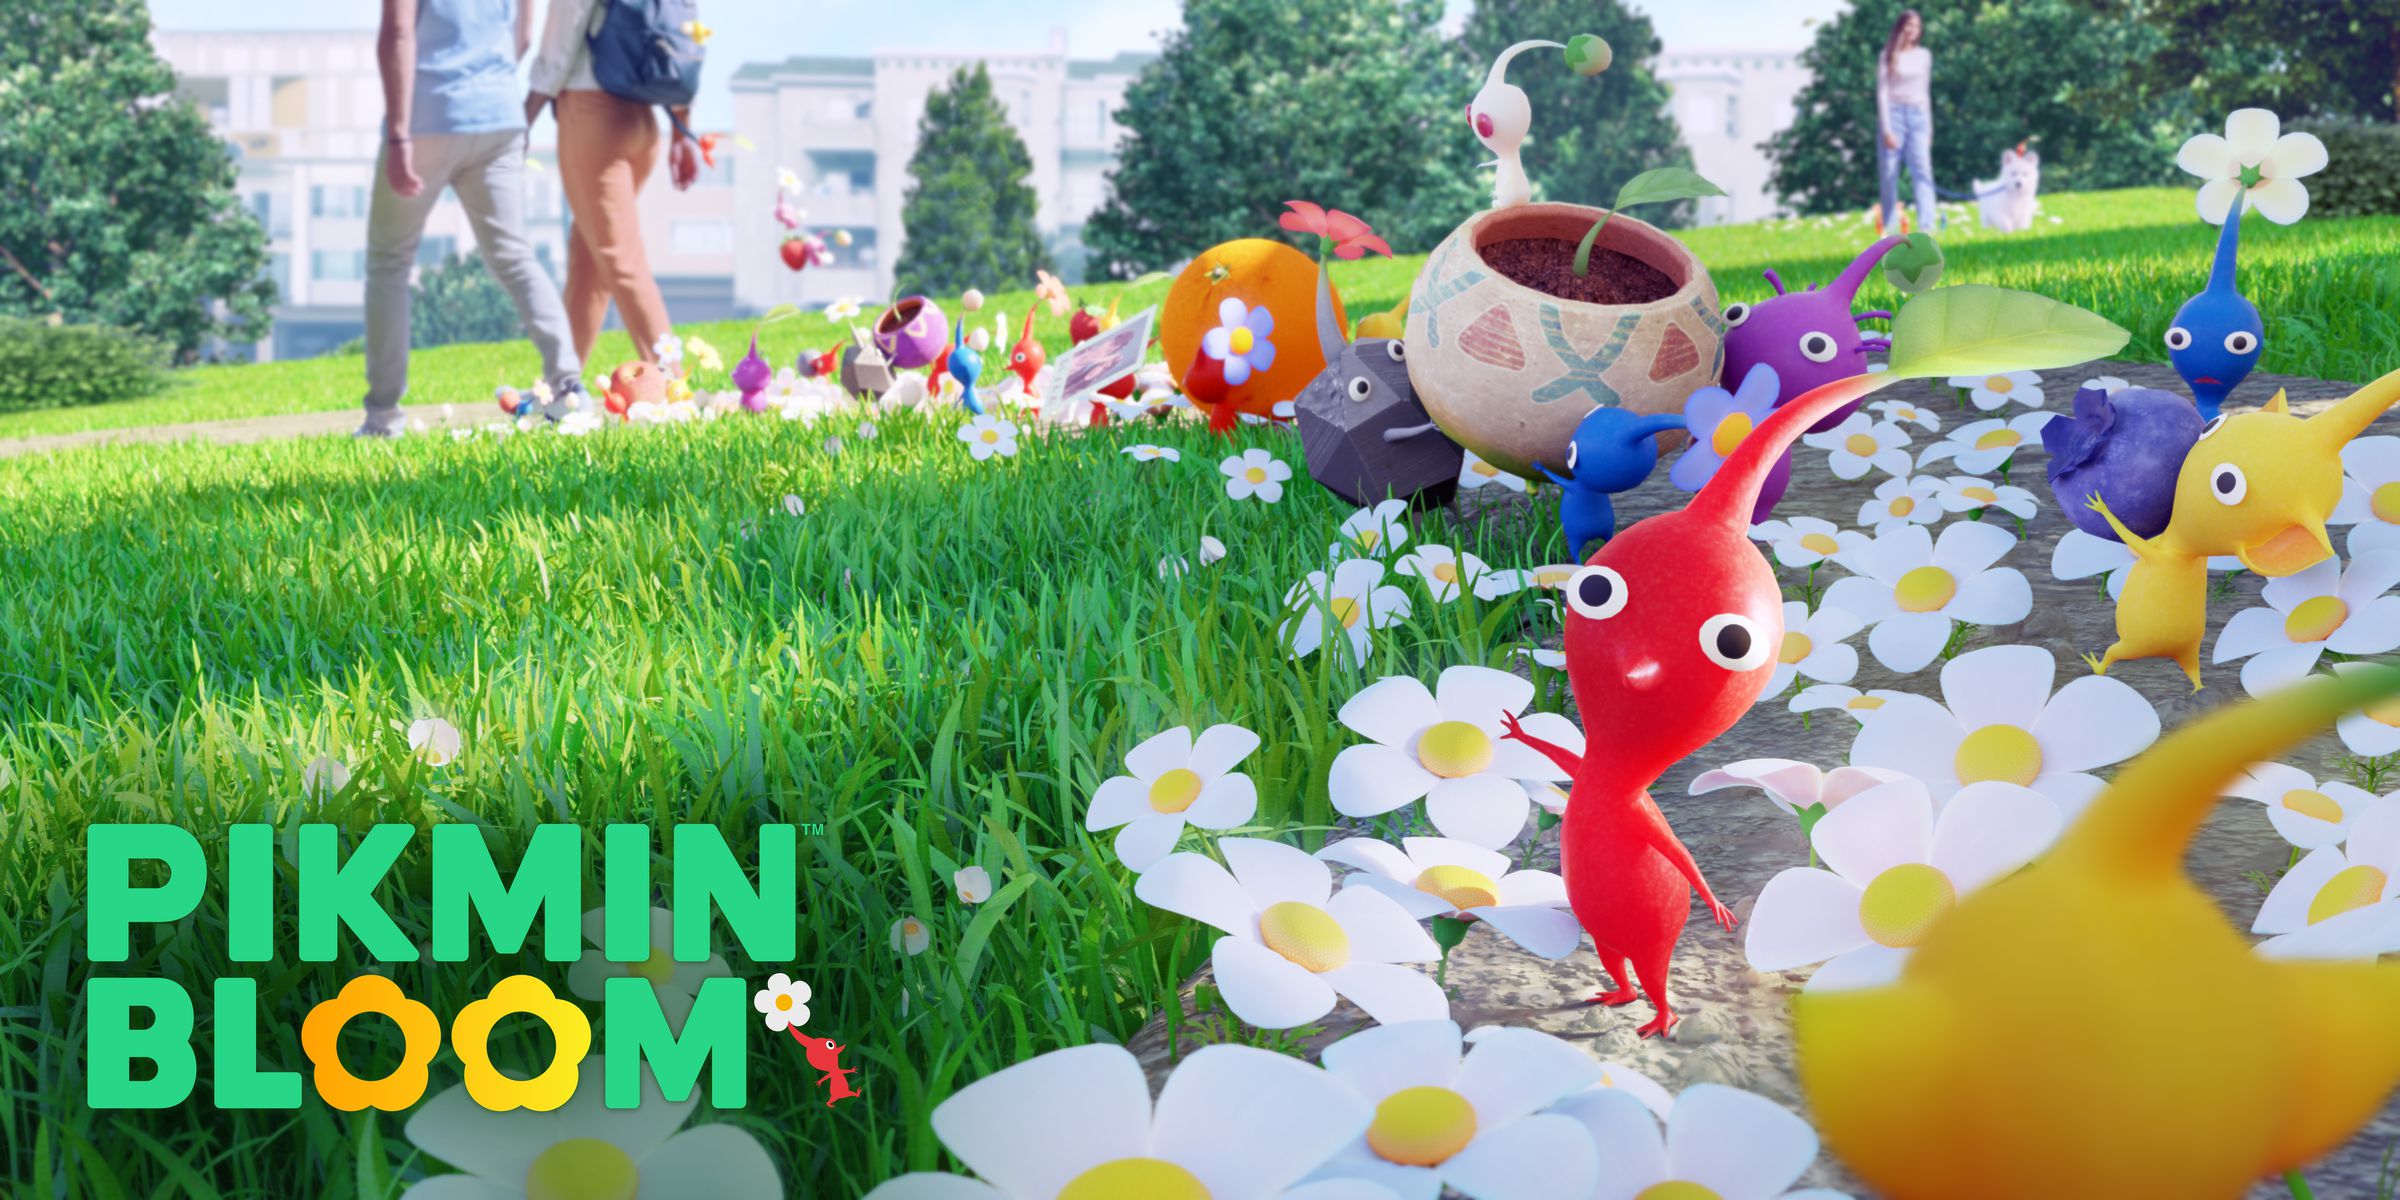 Una captura de pantalla de Pikmin Bloom: pequeñas criaturas coloridas con grandes cabezas en medio de un césped sembrado de margaritas.